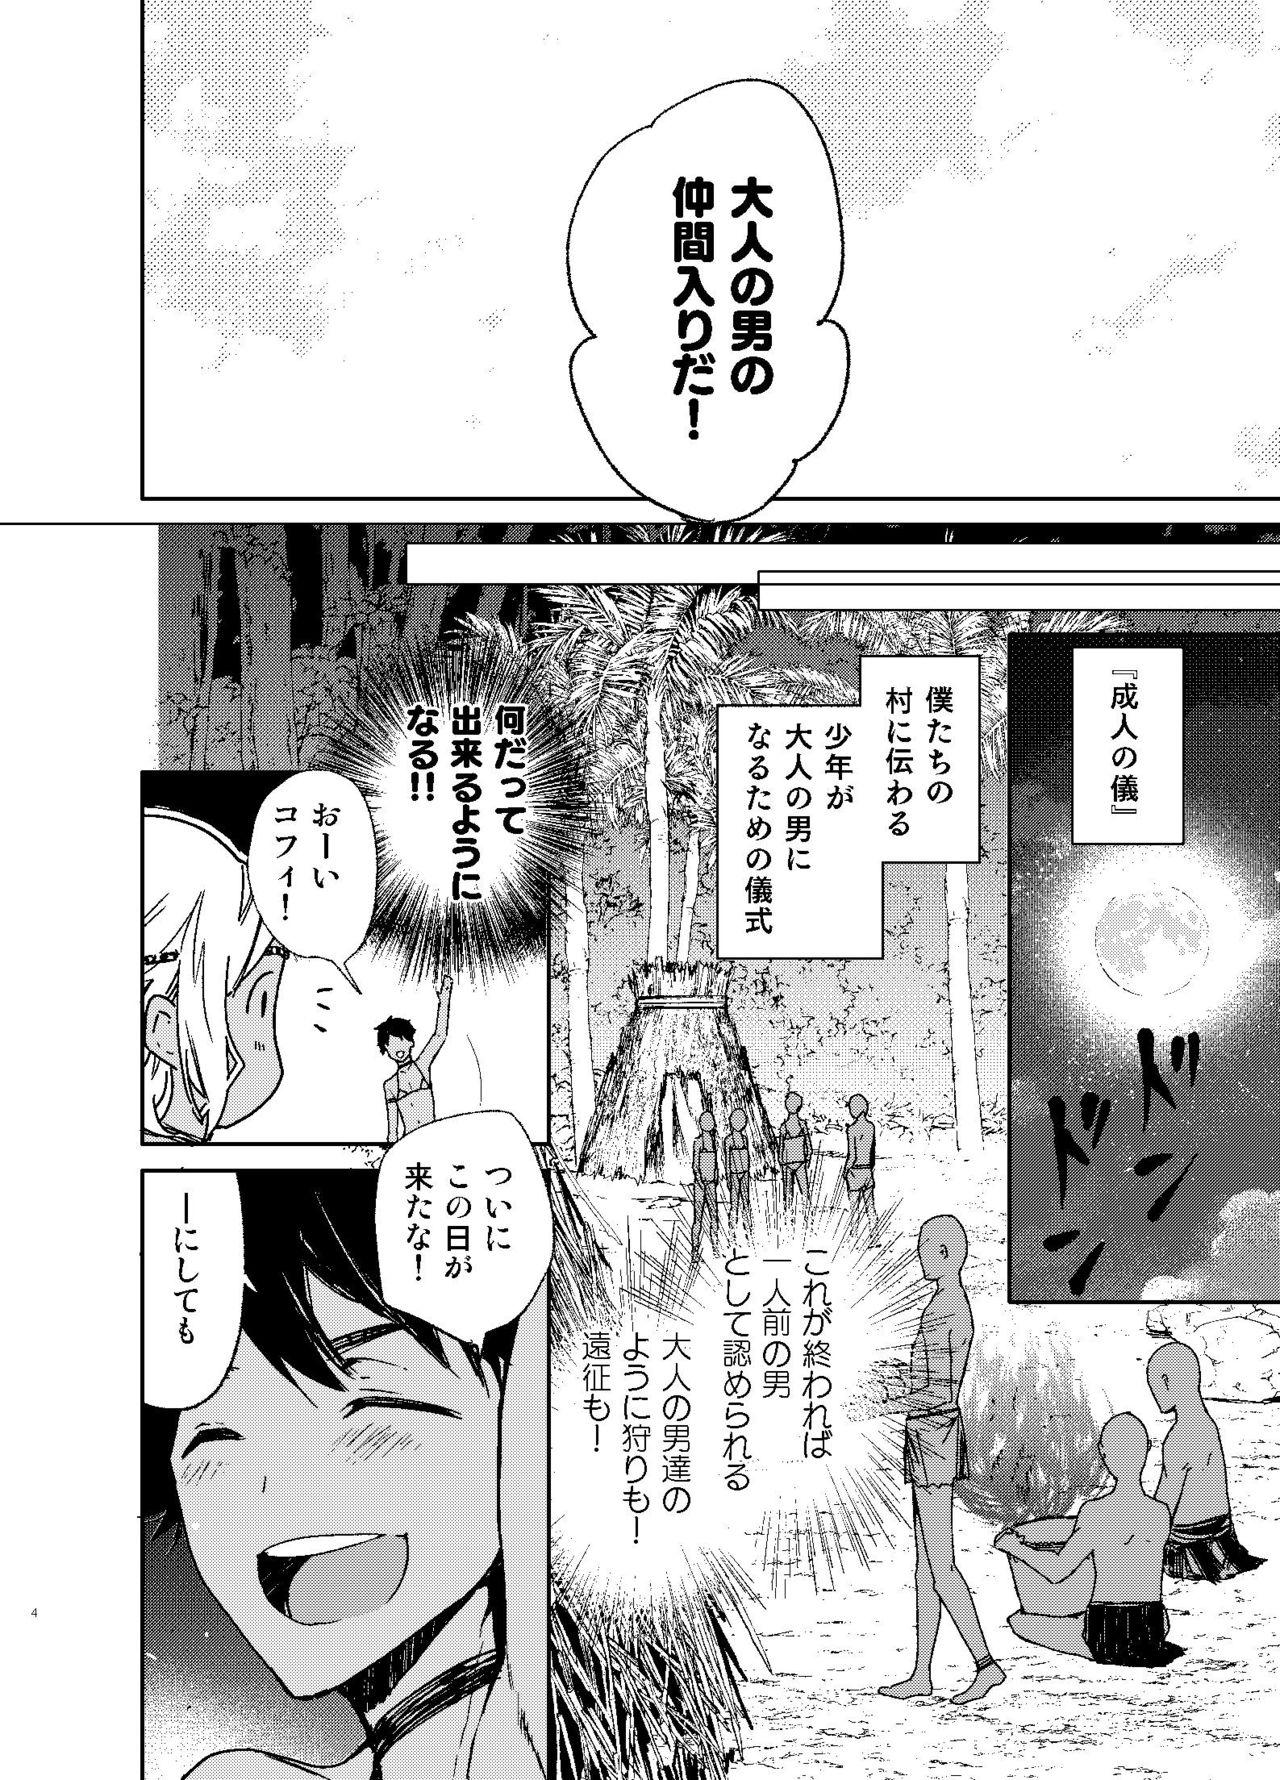 Romantic Seijin no Gi - Original Transexual - Page 3